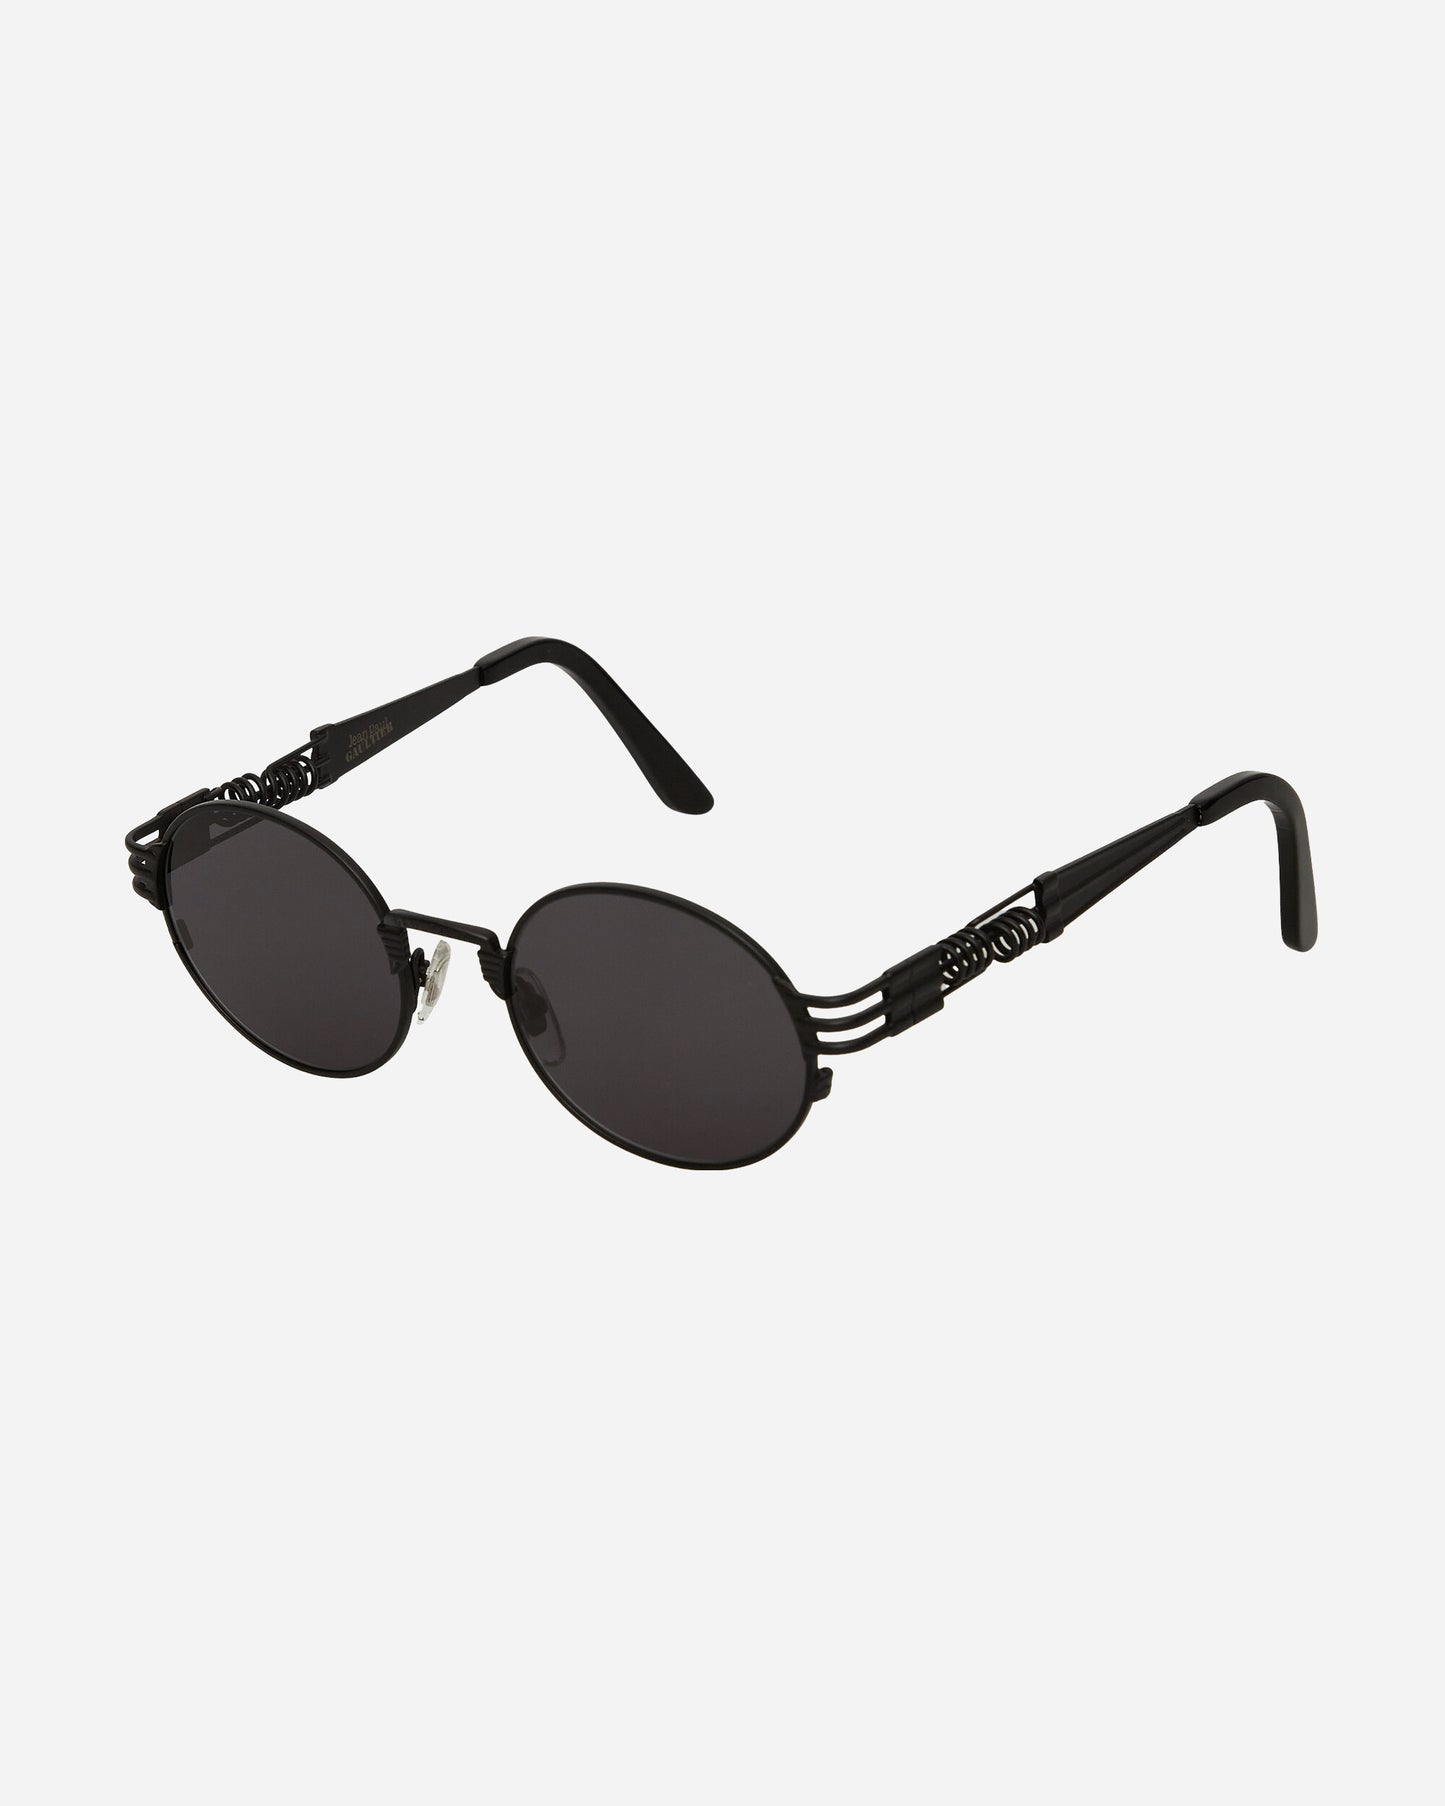 Jean Paul Gaultier 56-6106 Double Ressort Black Eyewear Sunglasses 2318-U-LU004-X024 0